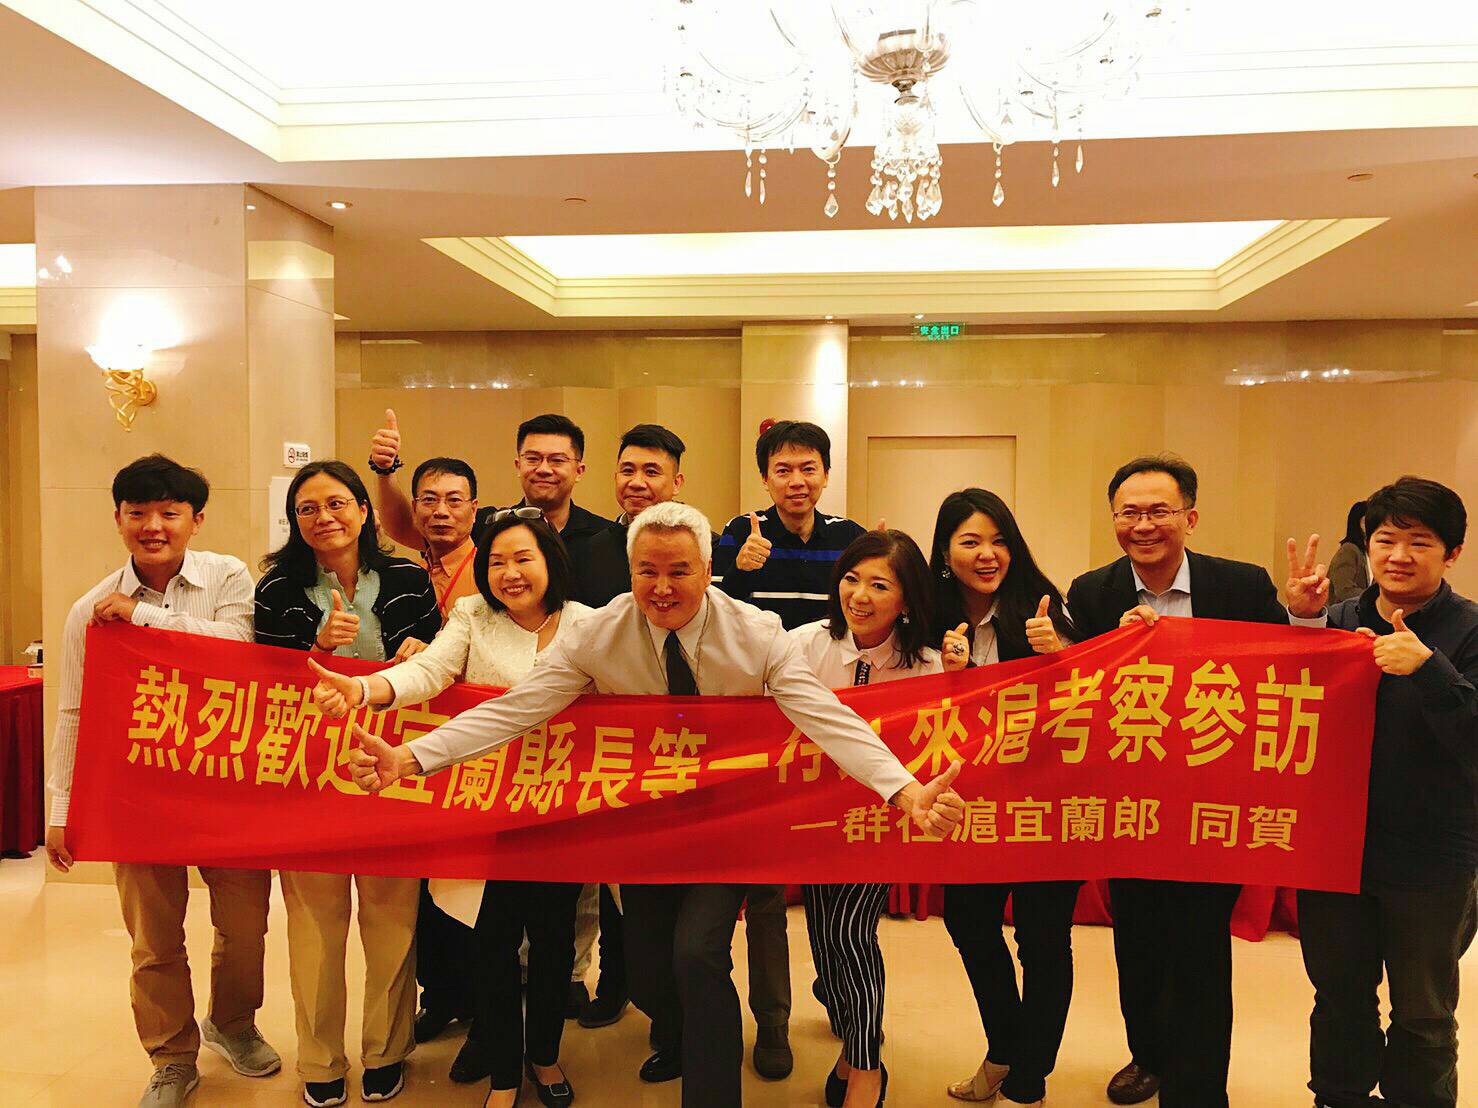 得知林姿妙縣長到上海拚經濟，一群在上海的宜蘭人特地到場拉起紅布條支持